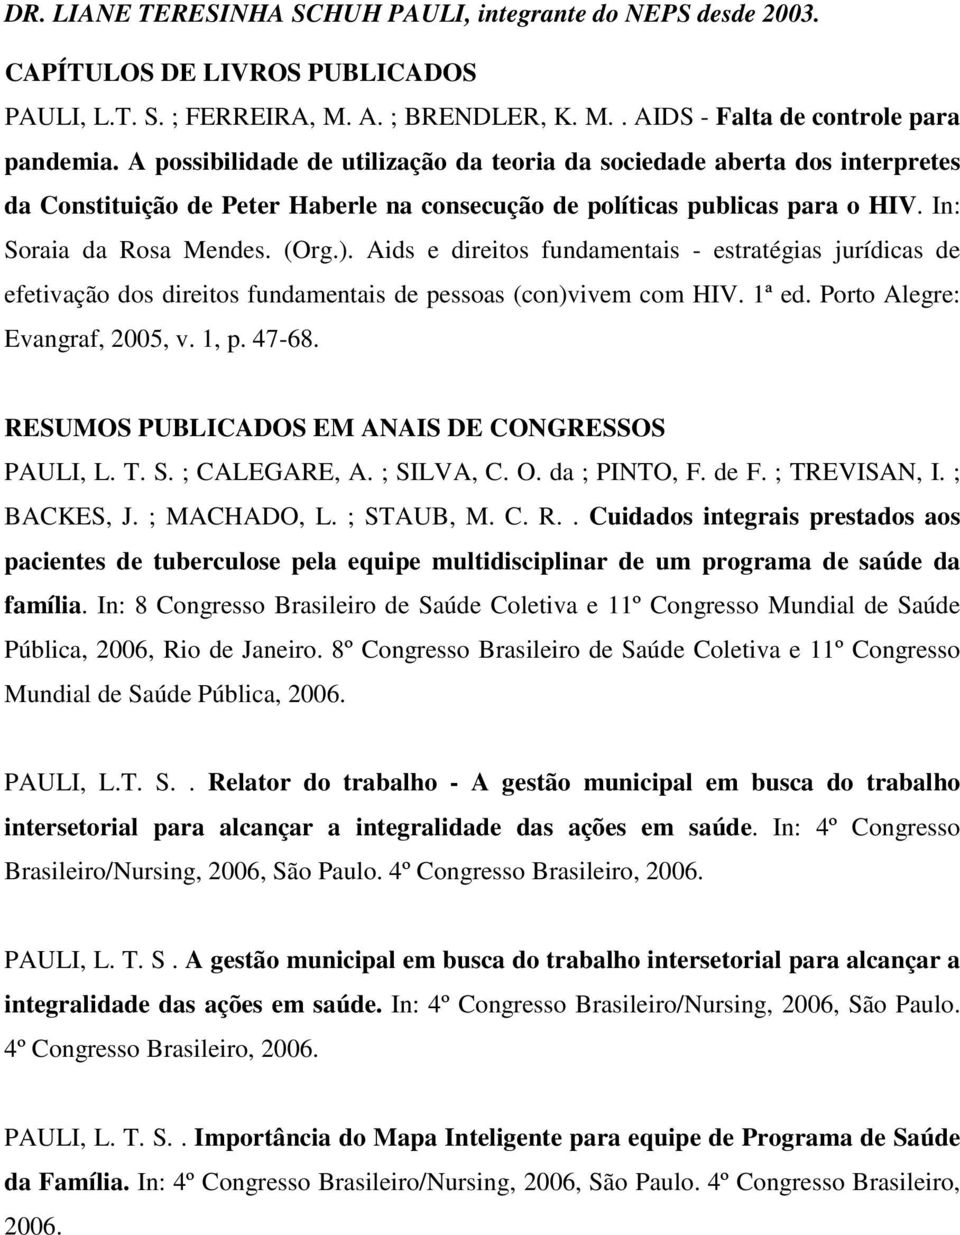 Aids e direitos fundamentais - estratégias jurídicas de efetivação dos direitos fundamentais de pessoas (con)vivem com HIV. 1ª ed. Porto Alegre: Evangraf, 2005, v. 1, p. 47-68.